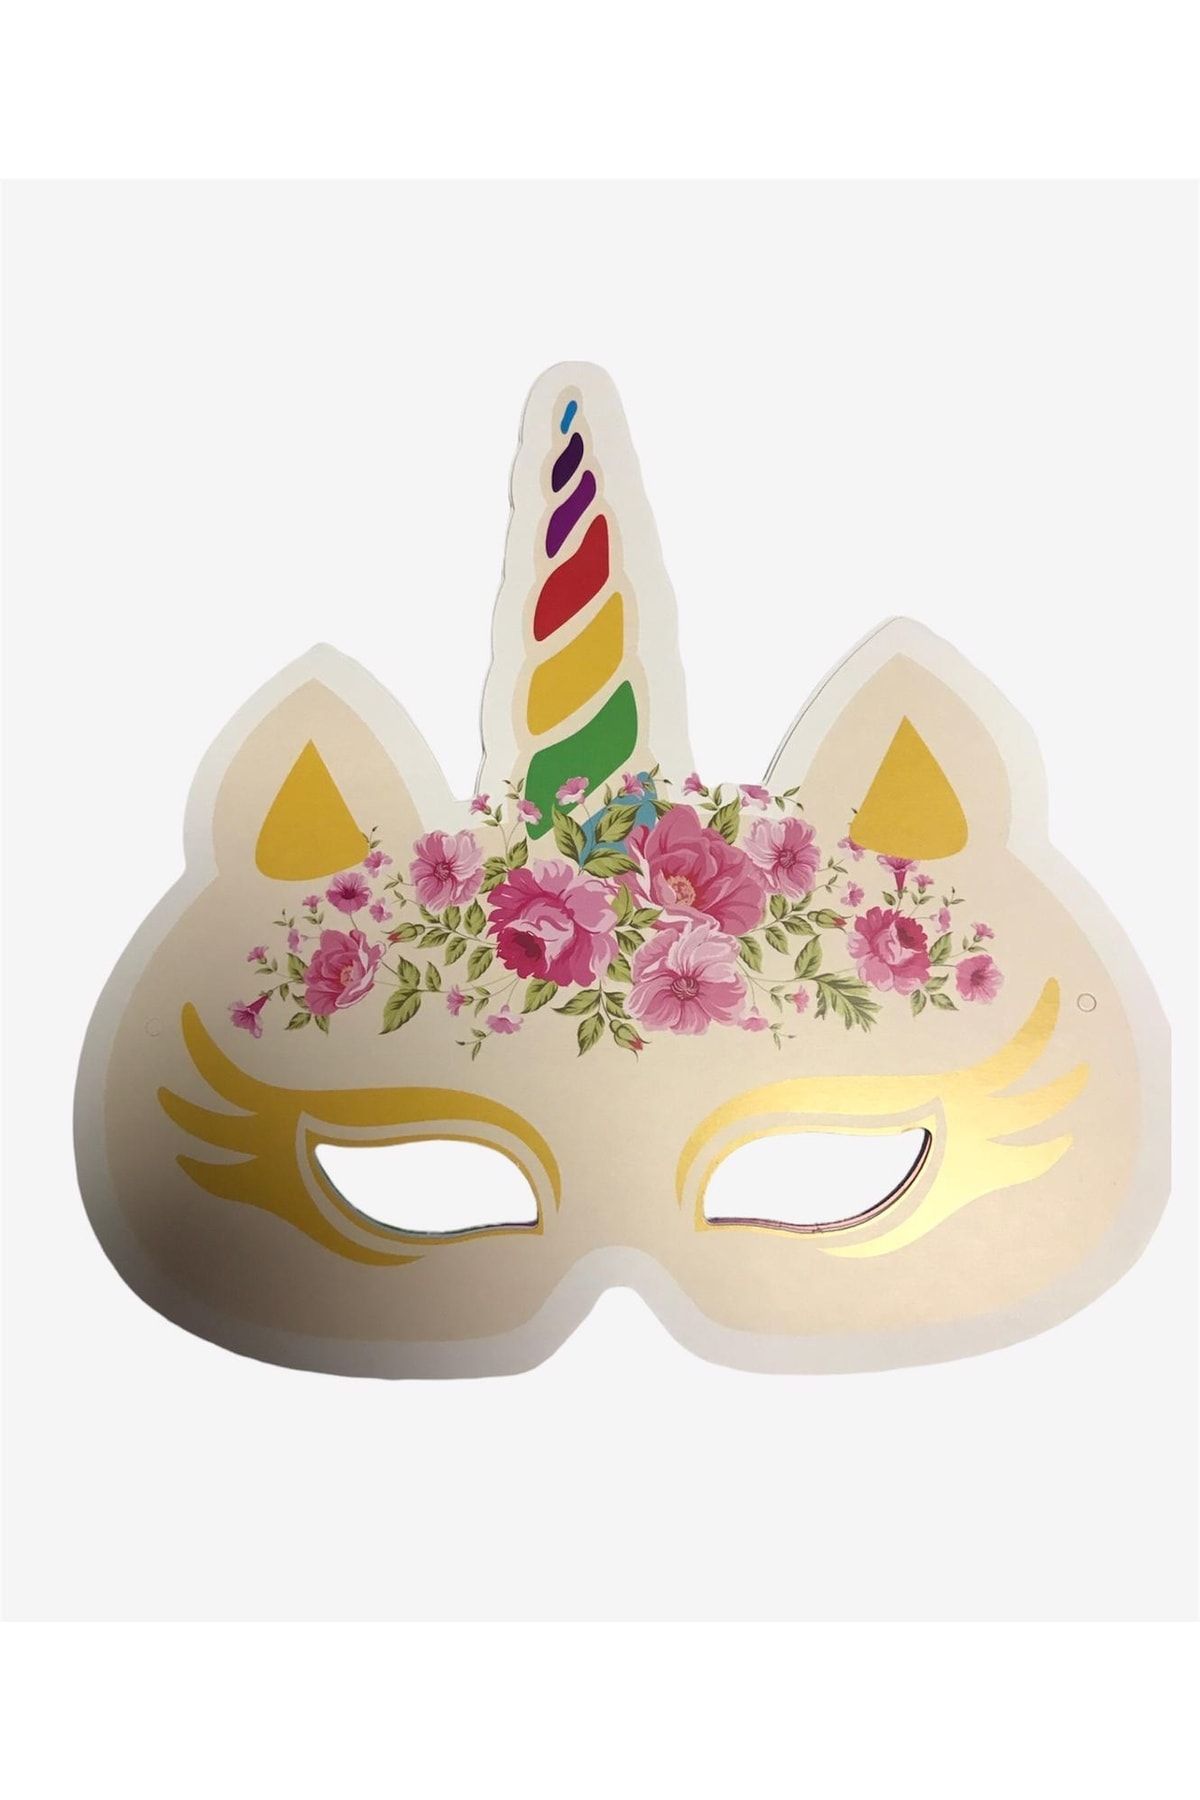 6'lı Unicorn Desenli Karton Maske Yüz Maskesi_0